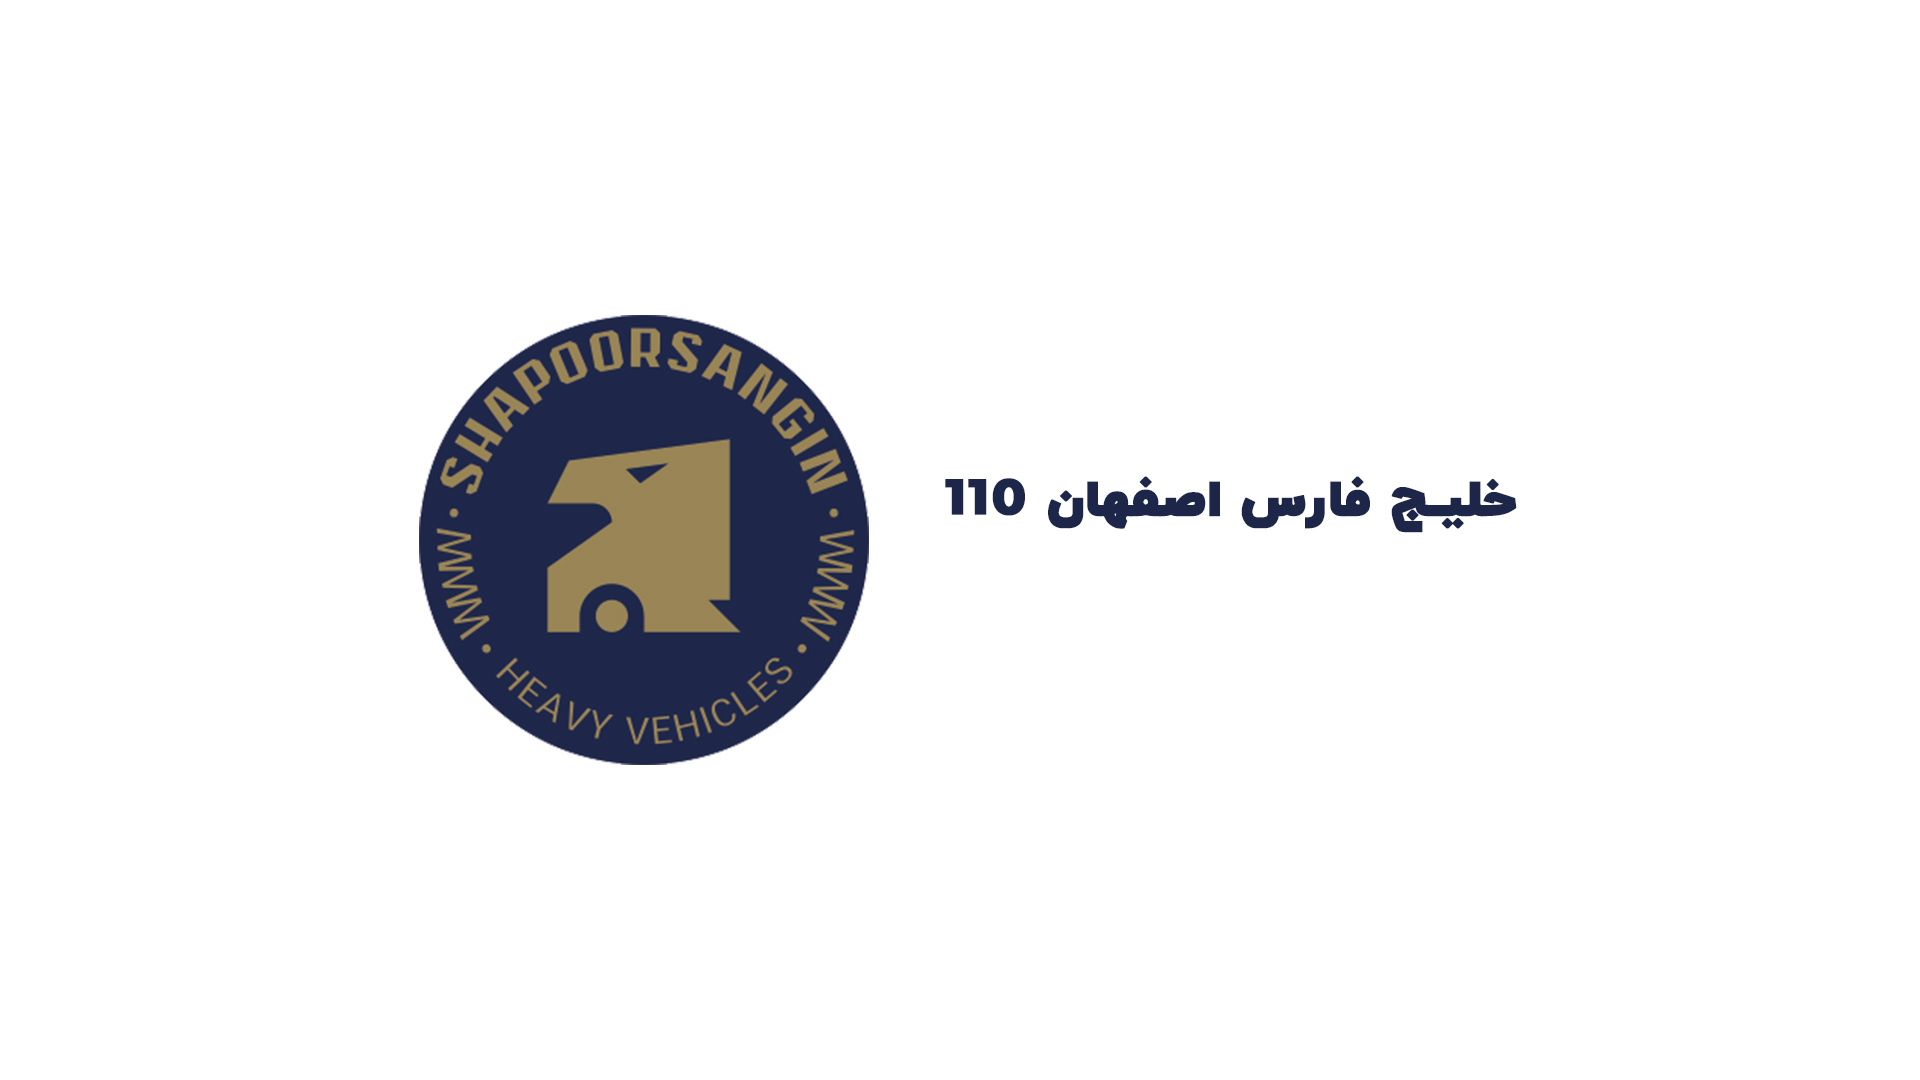 110 خلیج فارس اصفهان